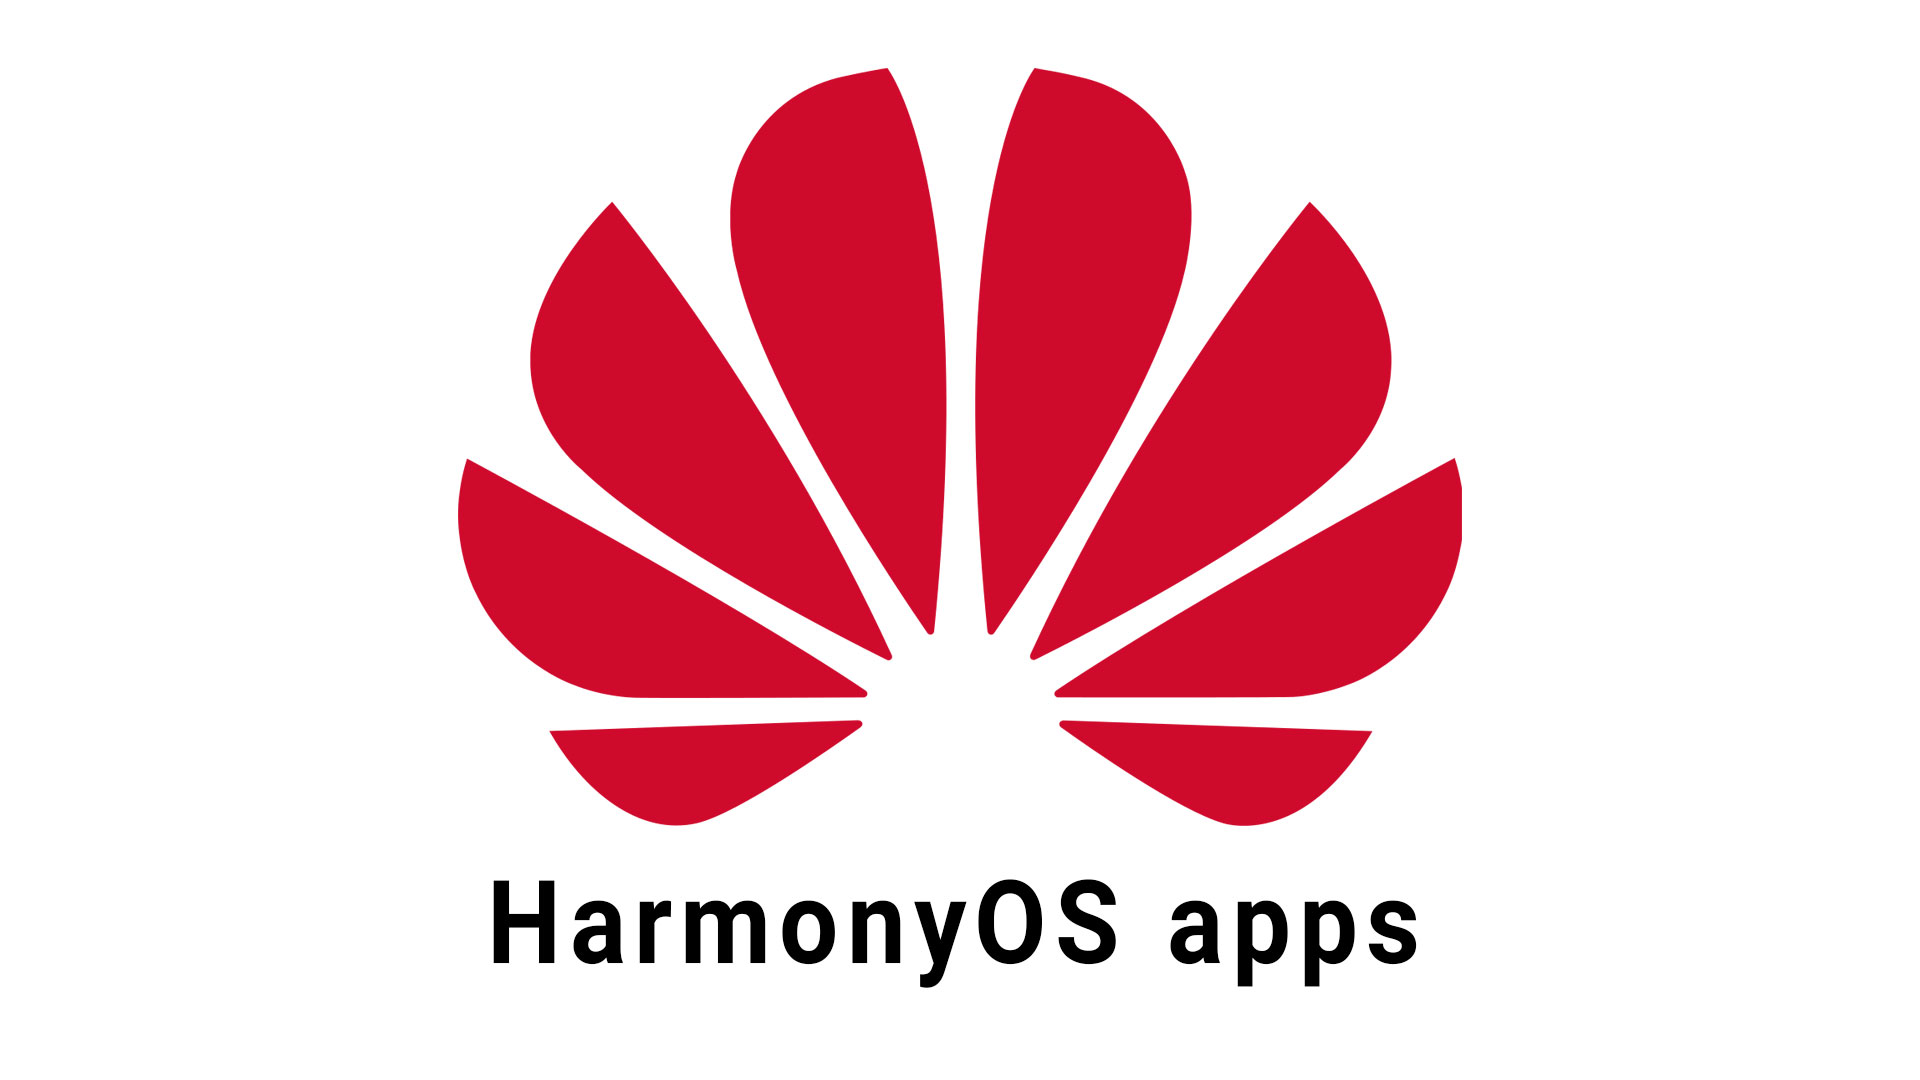 HarmonyOS apps